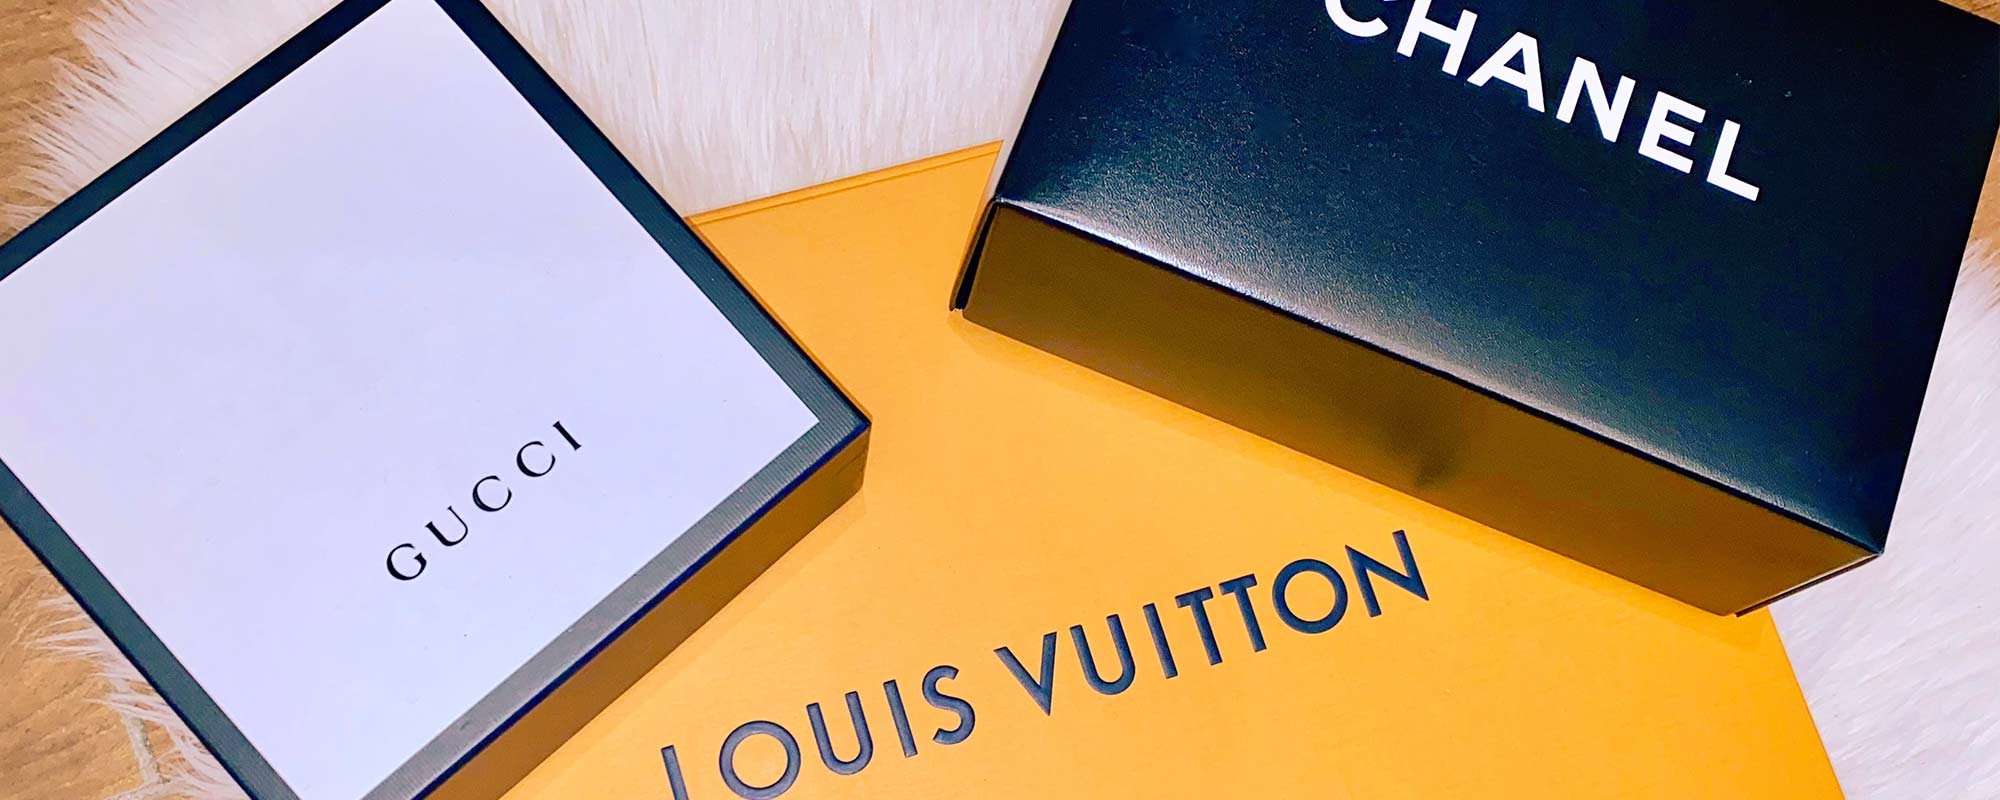 Coco Me Louie Luxury Brands - Gucci, Channel, Louis Vuitton